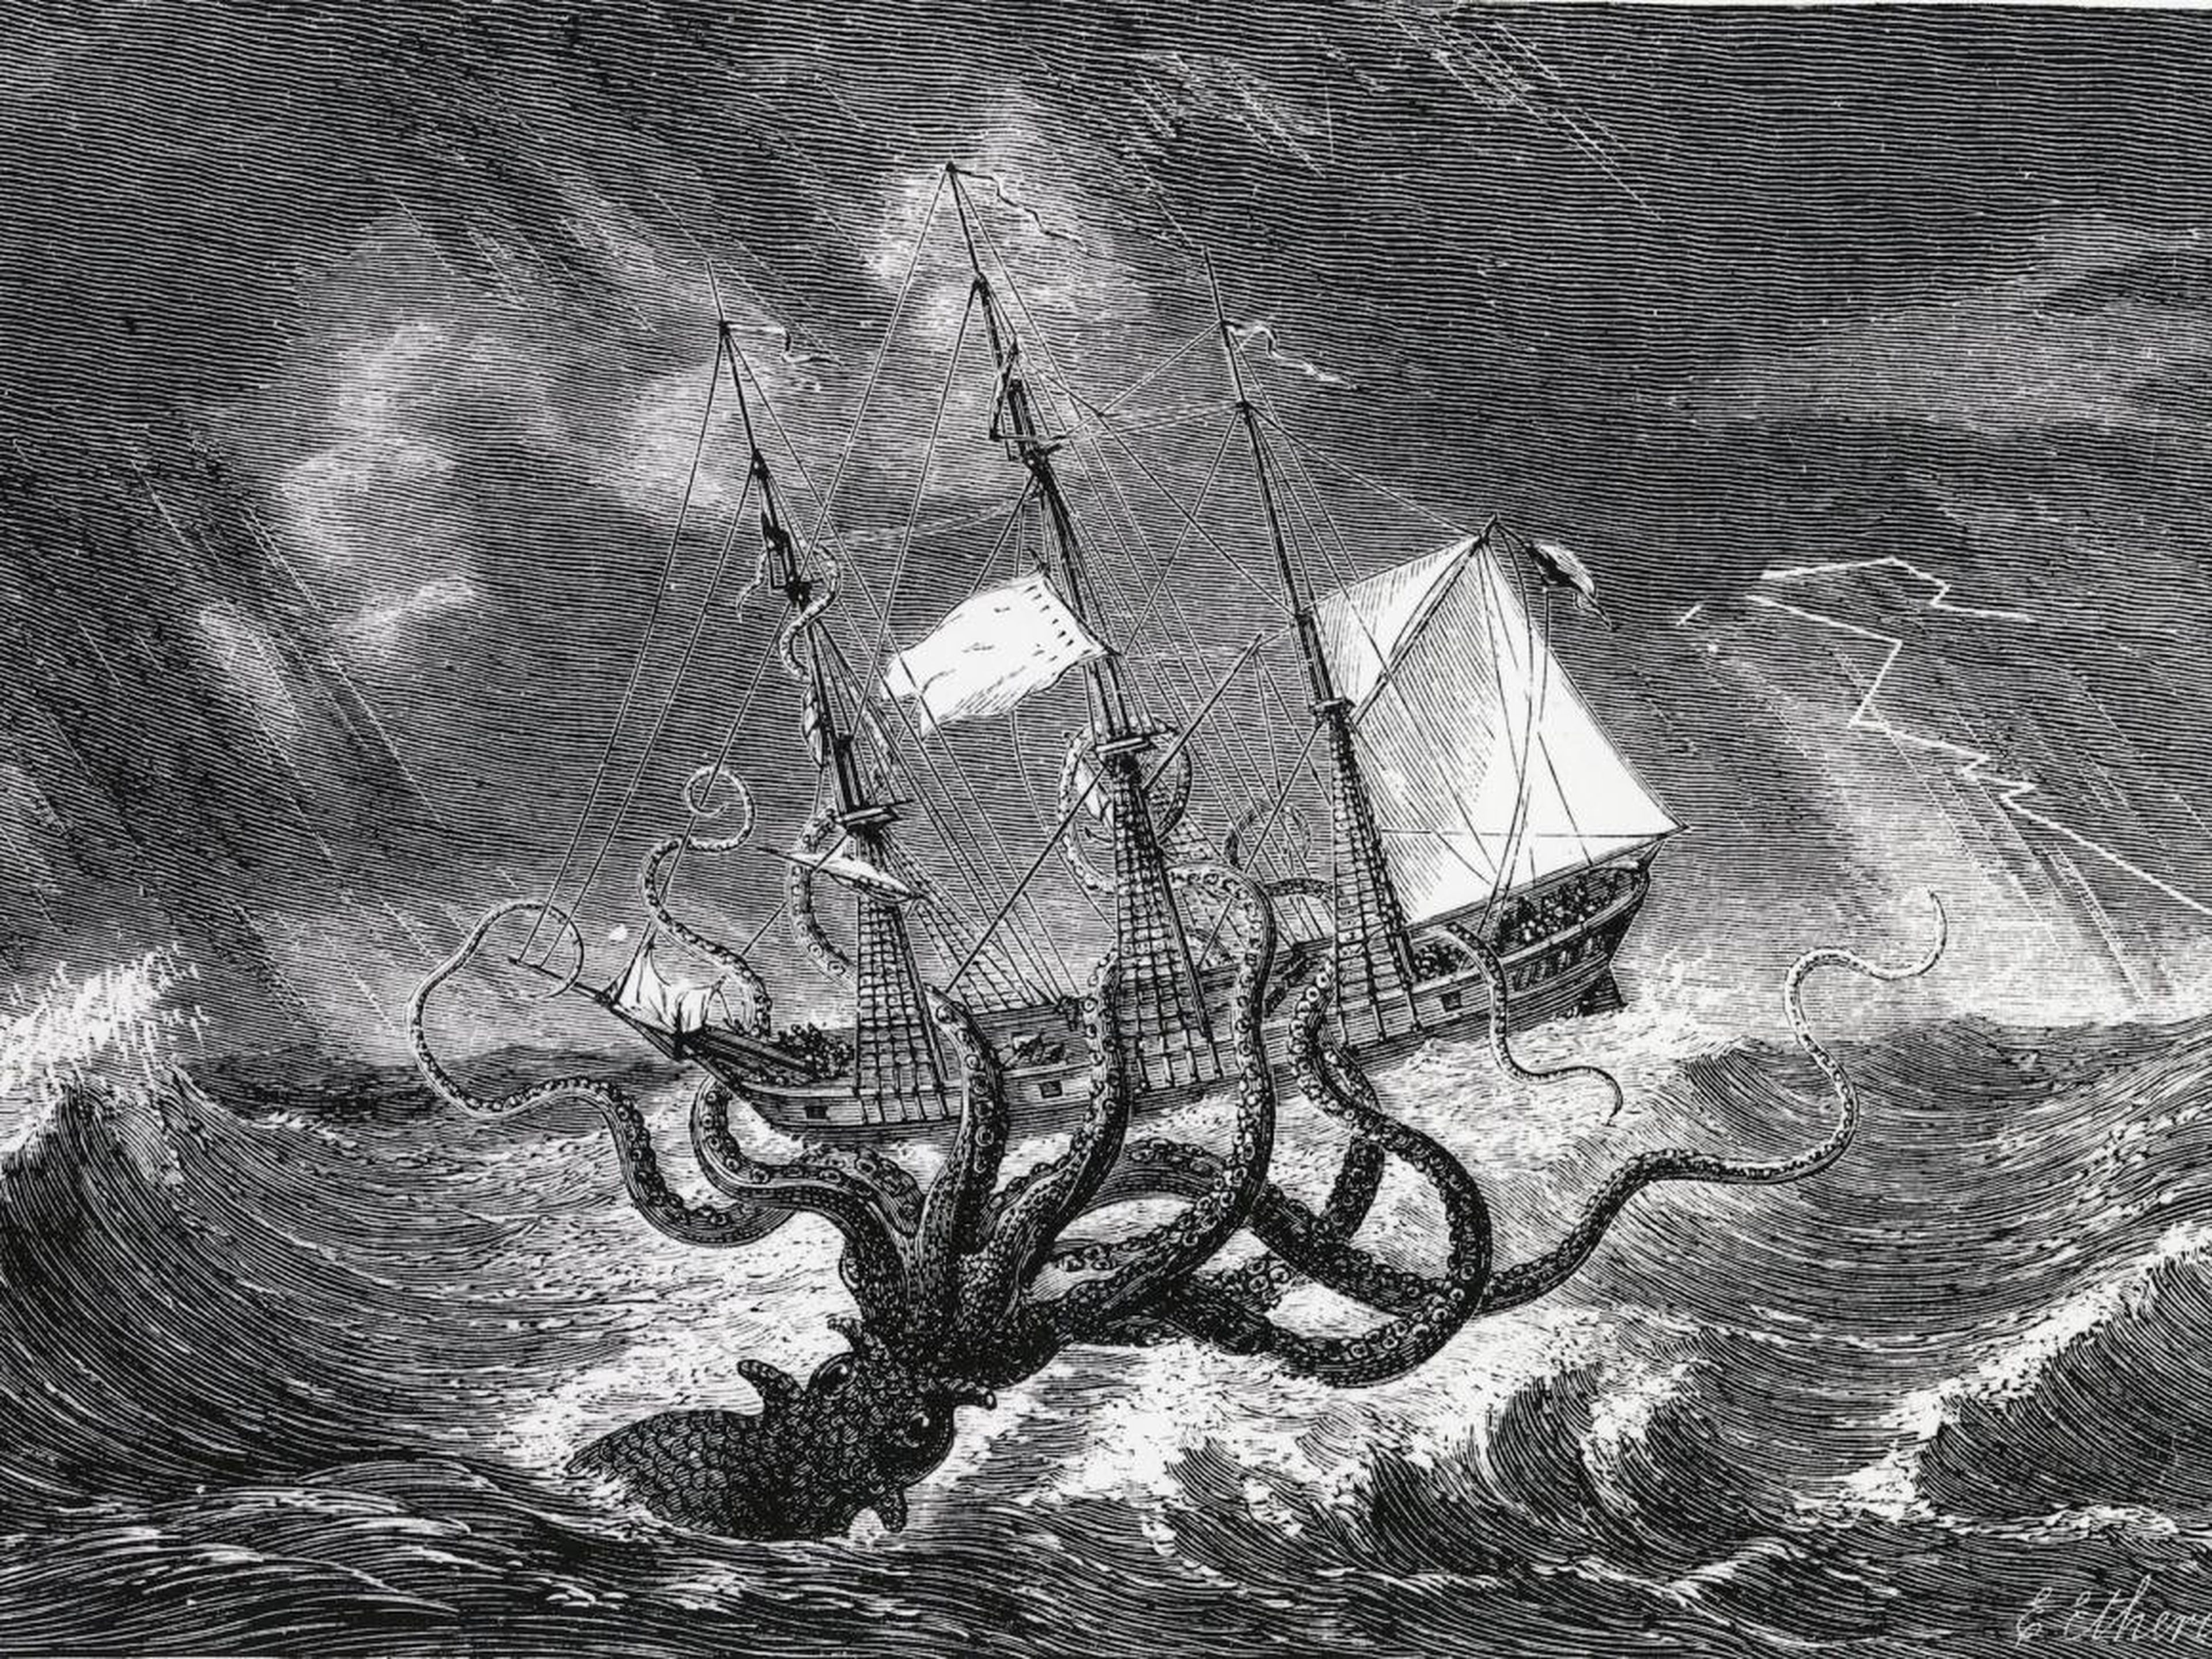 El legendario Kraken, monstruo de las profundidades, representado como un calamar gigante. Grabado 1870.